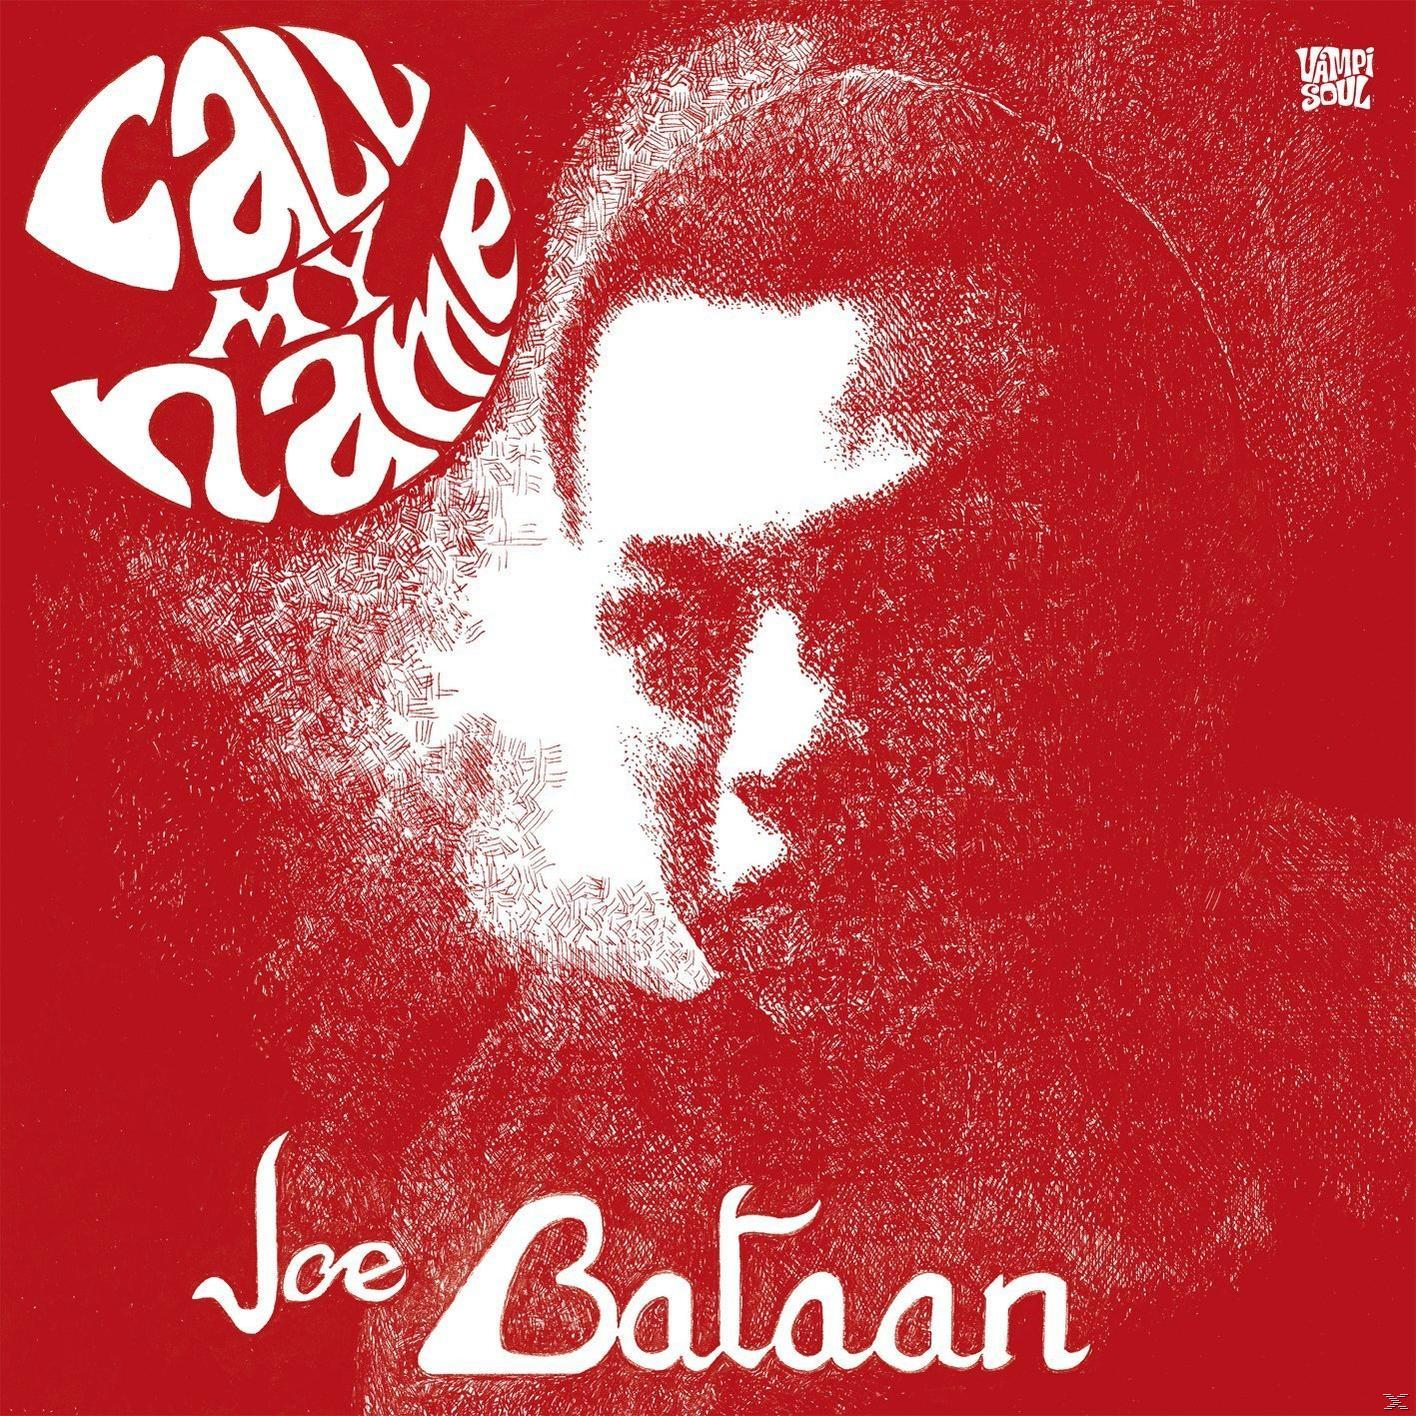 Joe Bataan - My Call (Vinyl) - Name